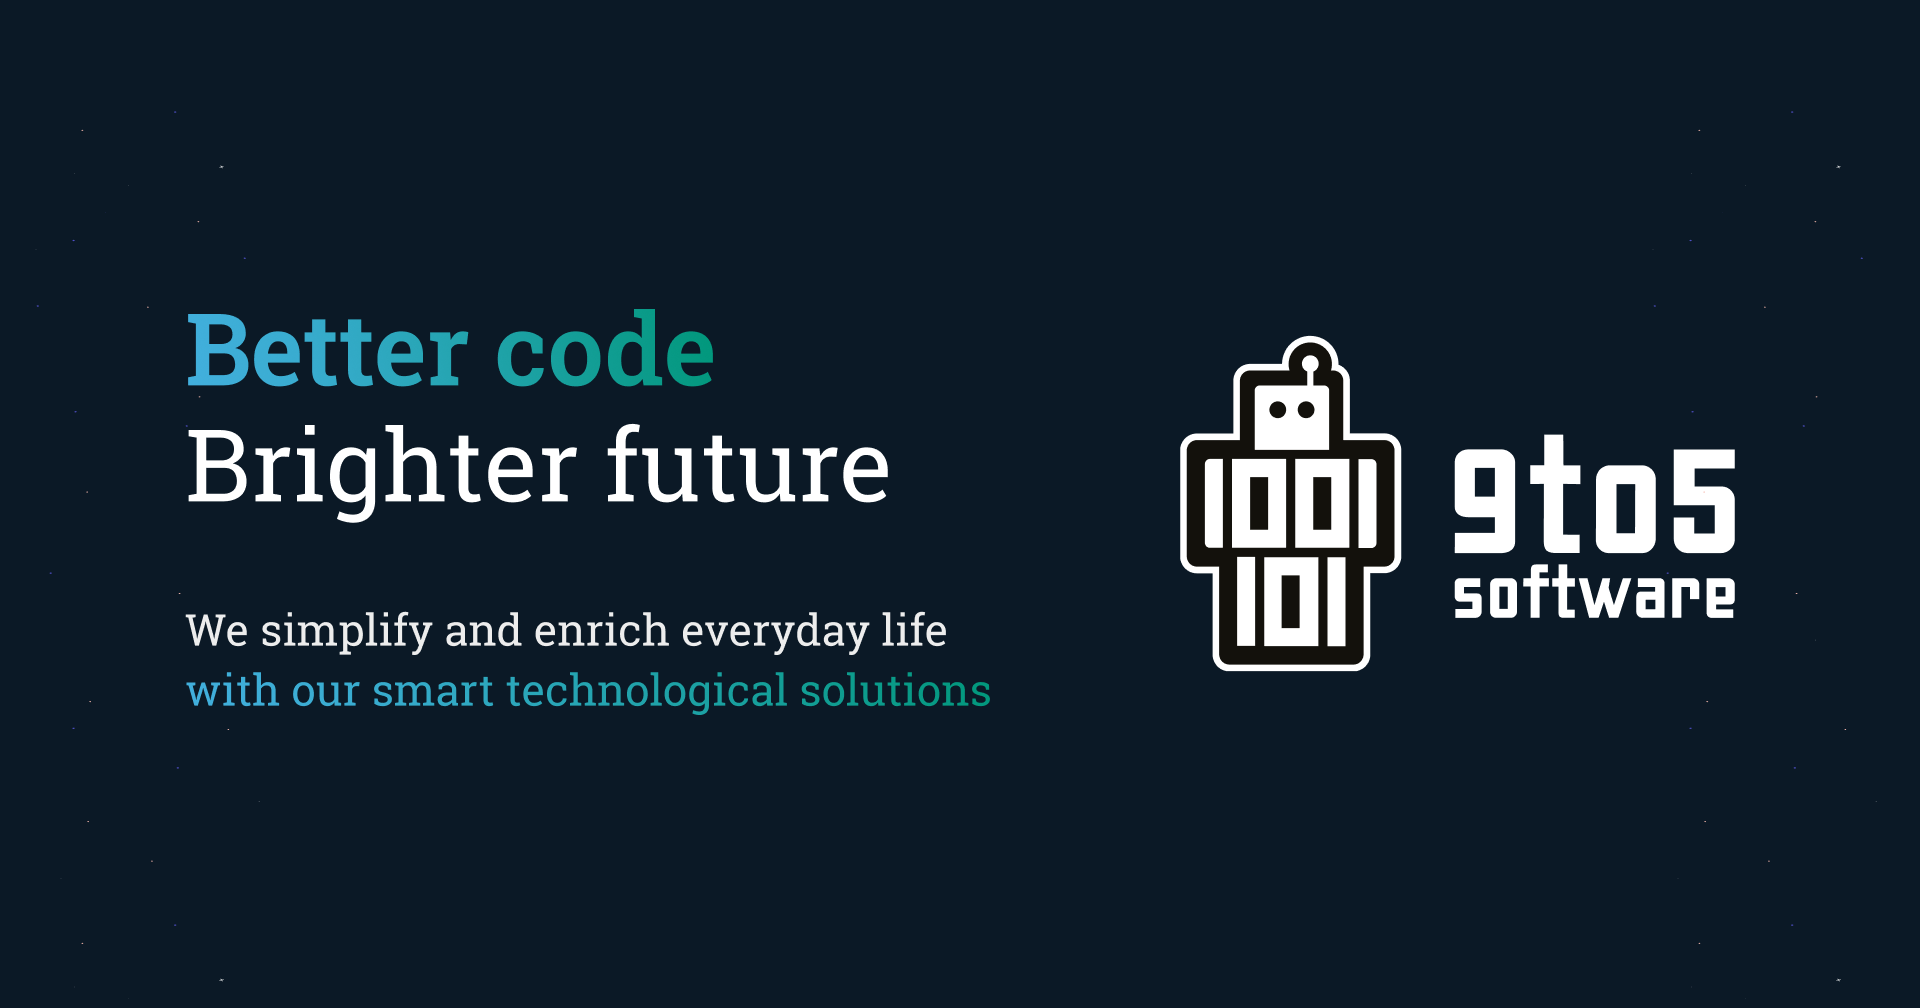 Better code, brighter future: onze vernieuwde identiteit - Bij 9to5 zijn we bezig met onze merkidentiteit. Een belangrijk onderdeel hiervan is een pakkende slogan.